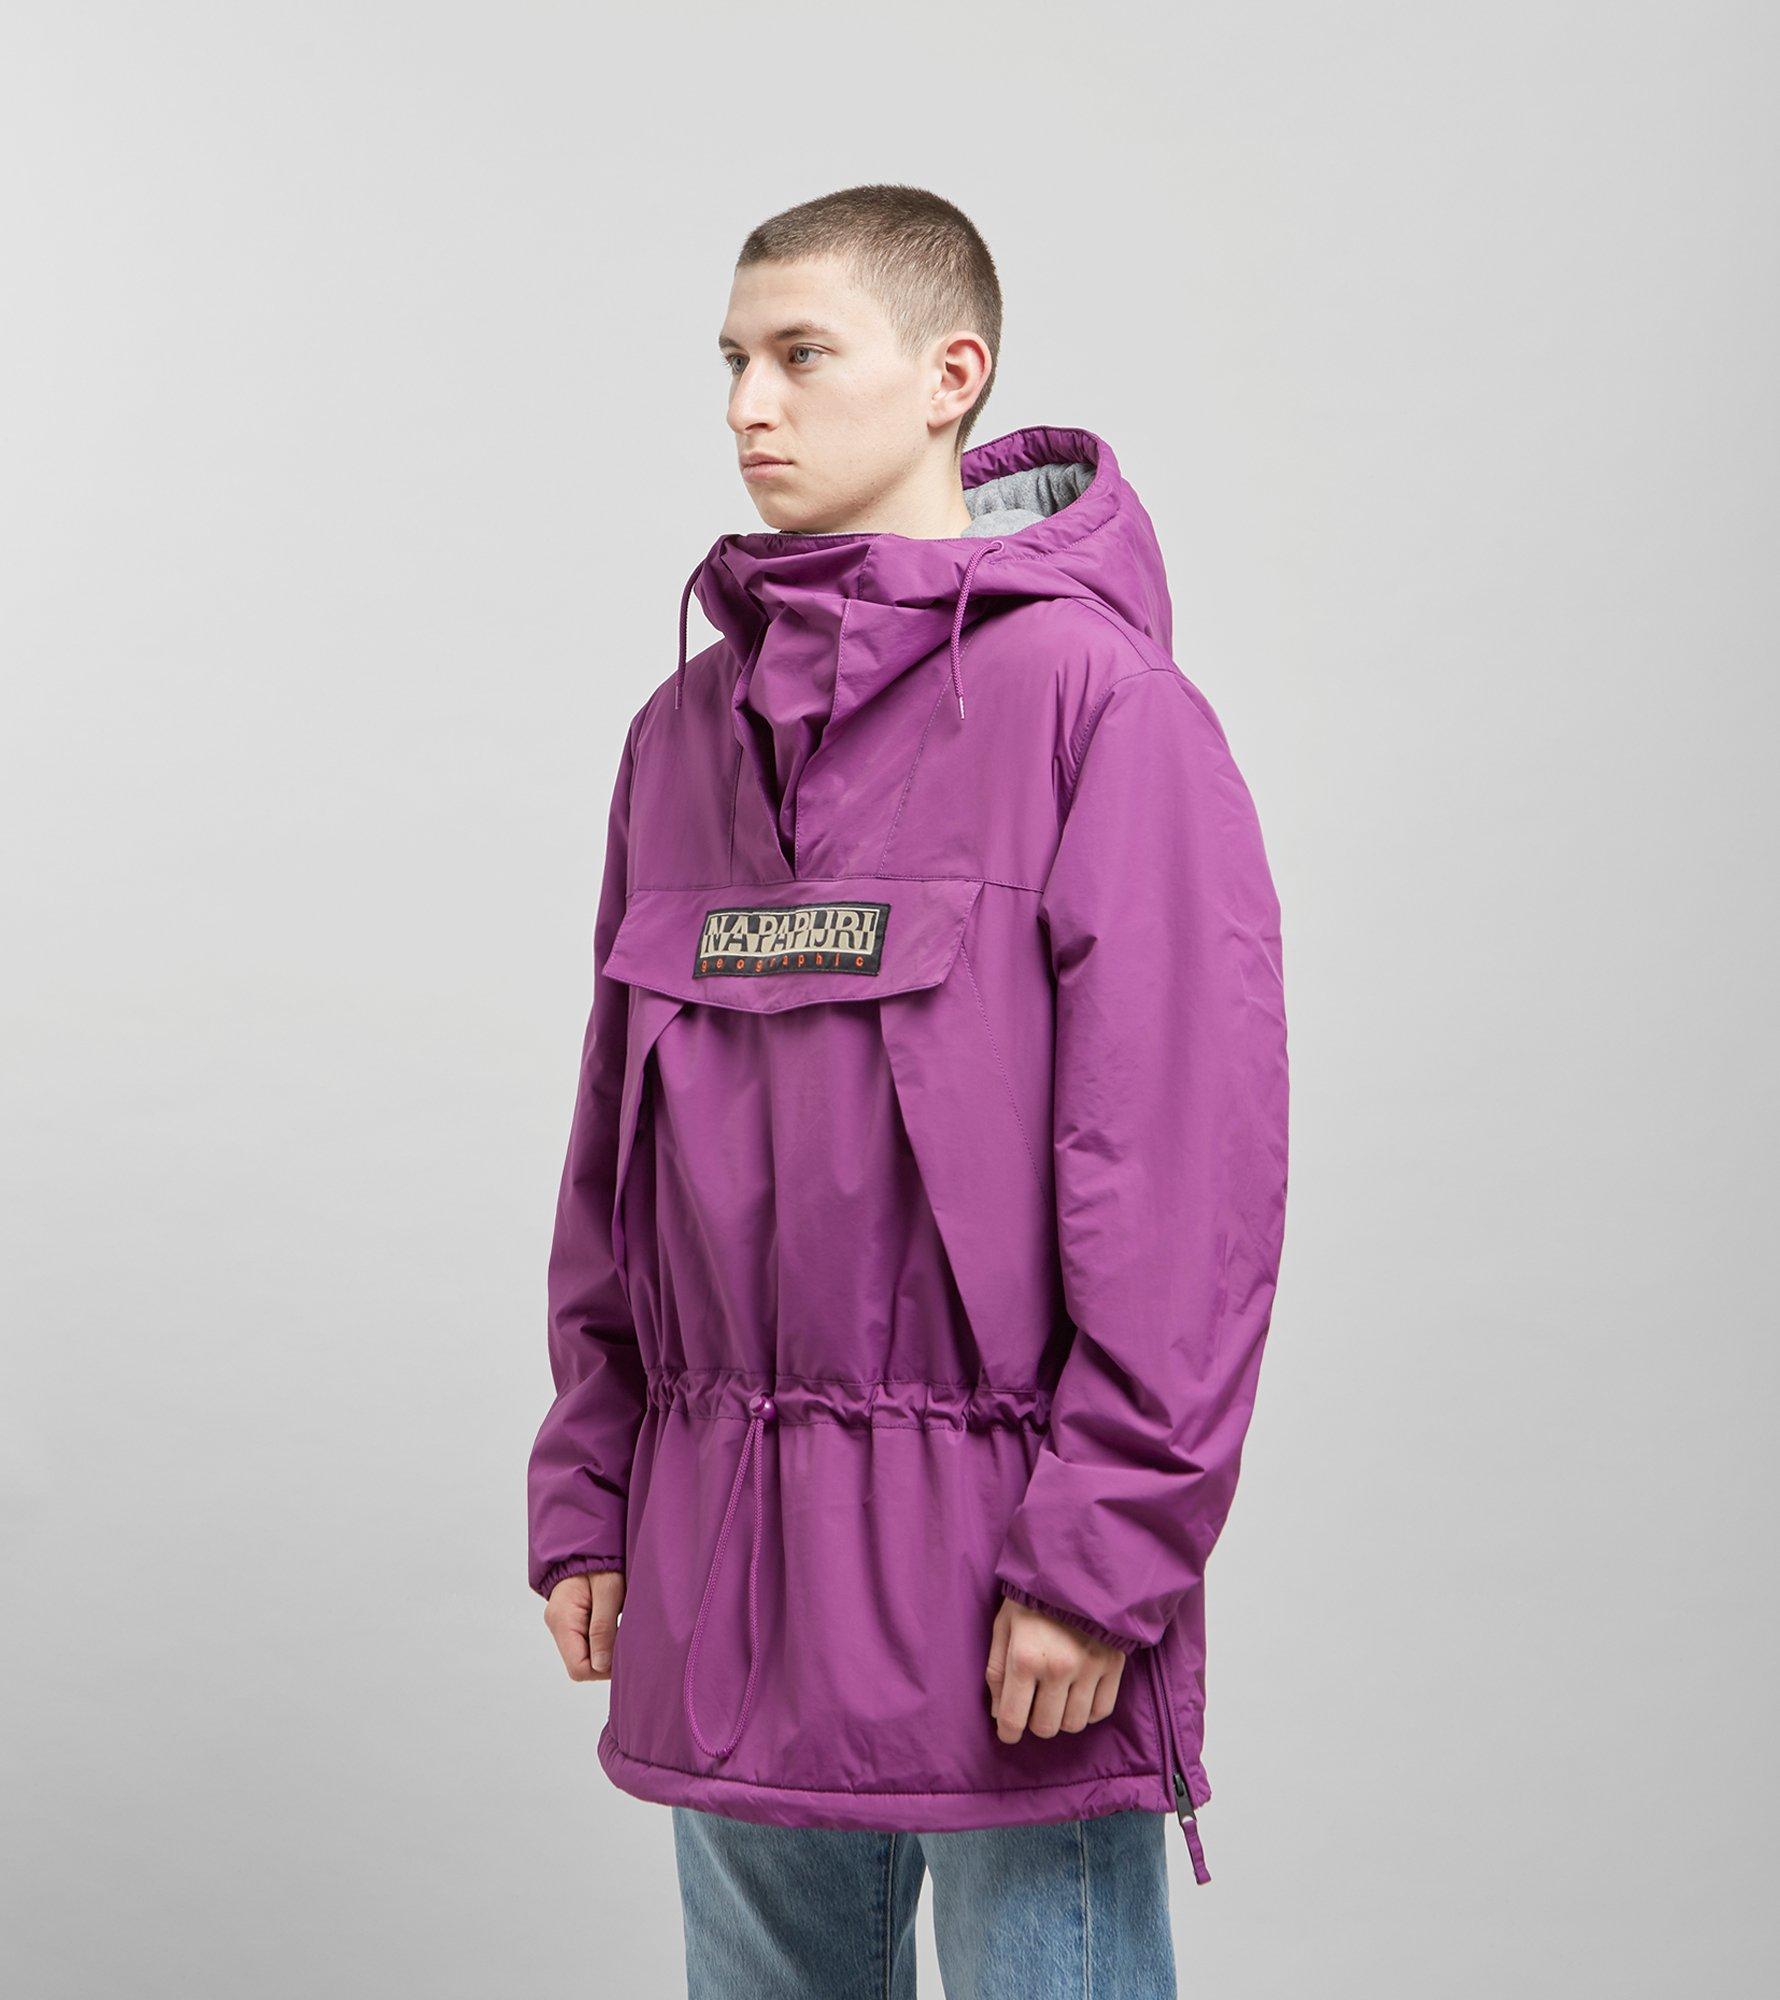 Napapijri Skidoo Purple Anorak Jacket for Men - Lyst